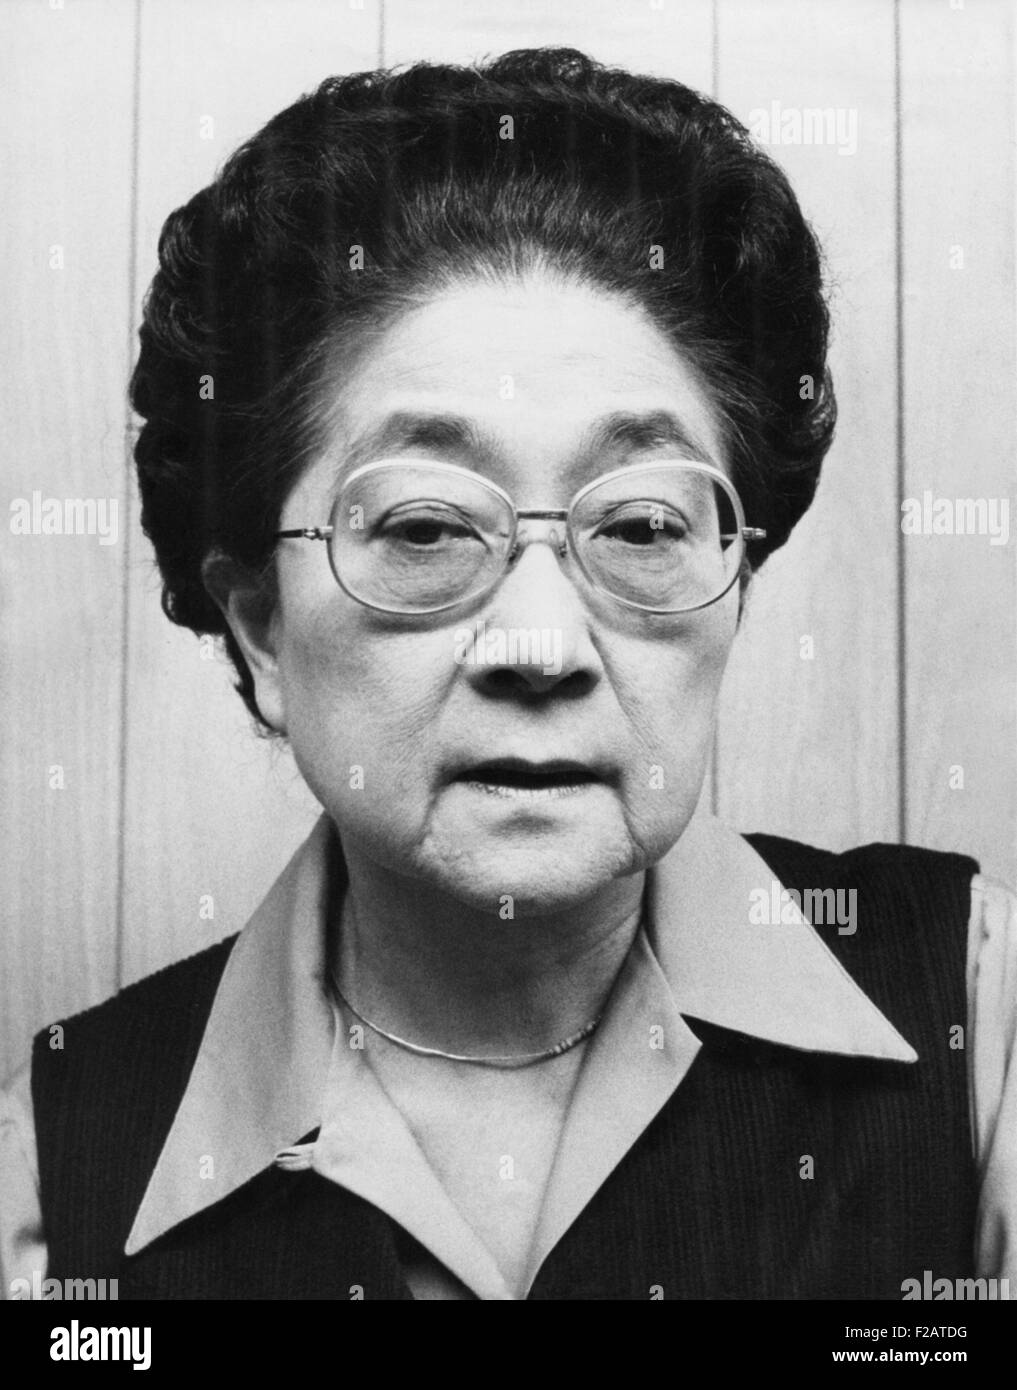 Iva Toguri D'Aquino nel 1976 quando Japanese-American gruppo ha cercato la sua grazia presidenziale. Lei è stato condannato per tradimento nel 1949 Foto Stock